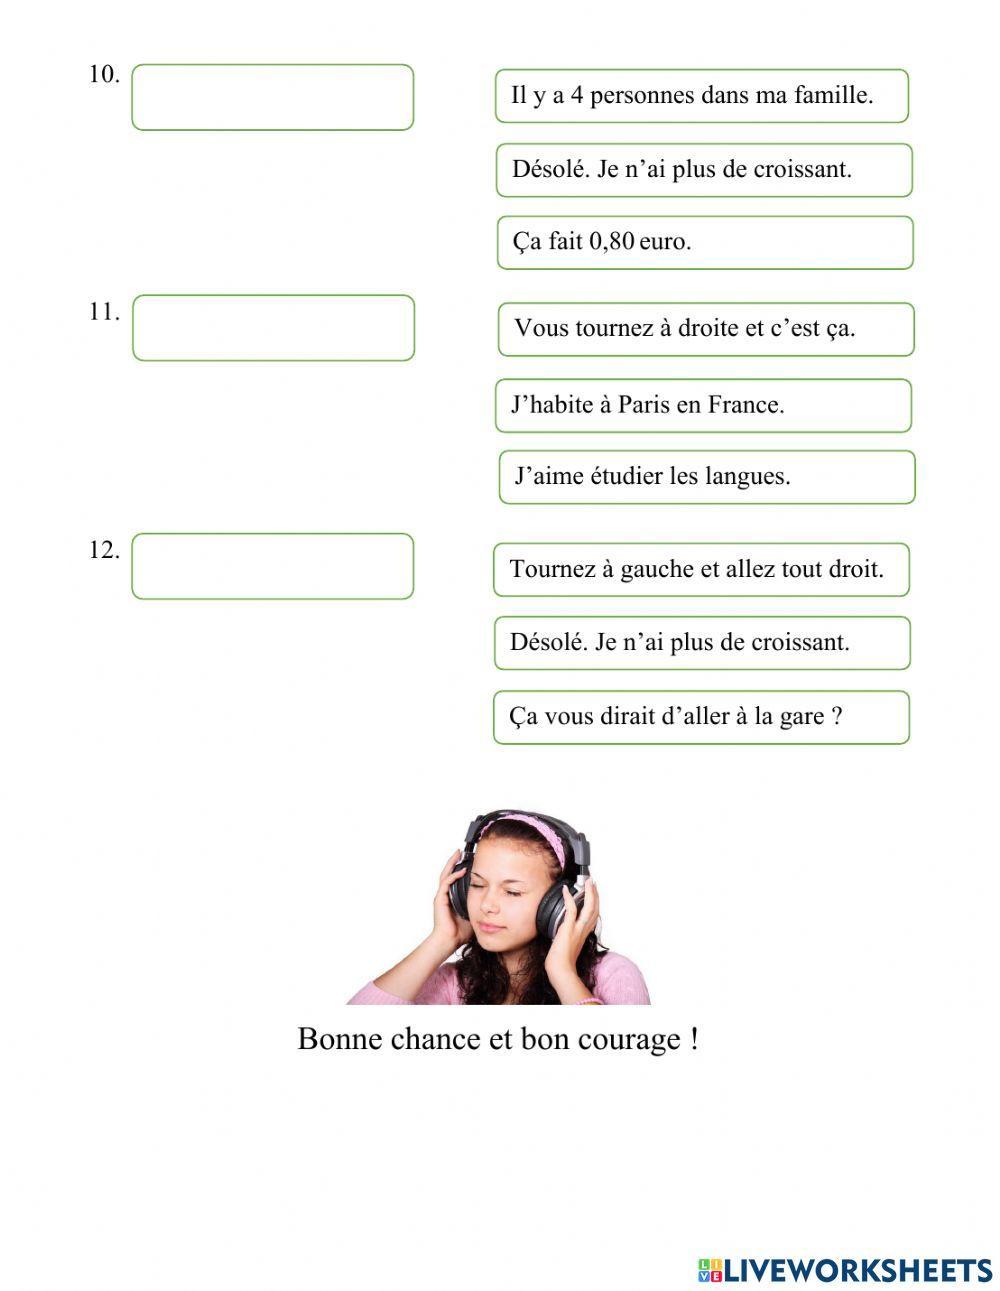 แบบทดสอบฟังคำถามและเลือกคำตอบภาษาฝรั่งเศส